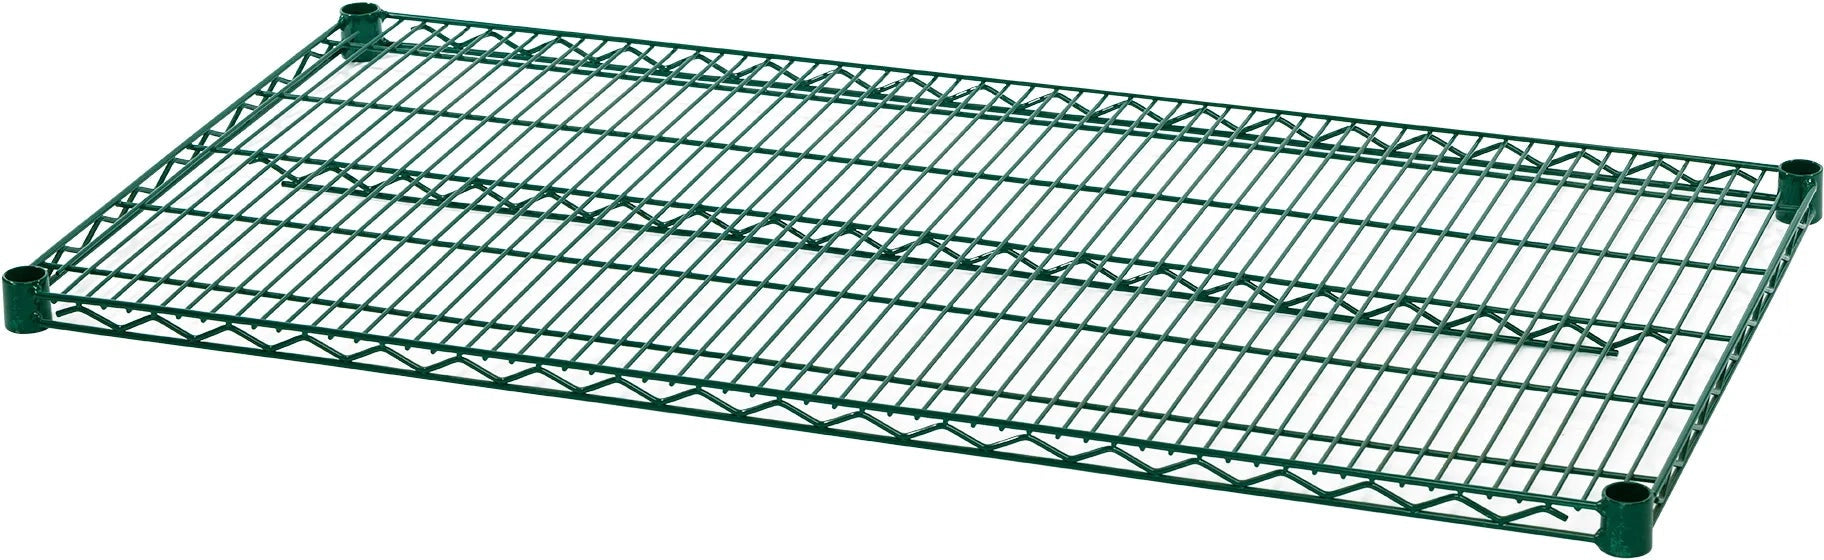 Julien - Rosko 48" x 18" Shelf for Wire Shelving, Green Epoxy - RO-WS-S4818-GE